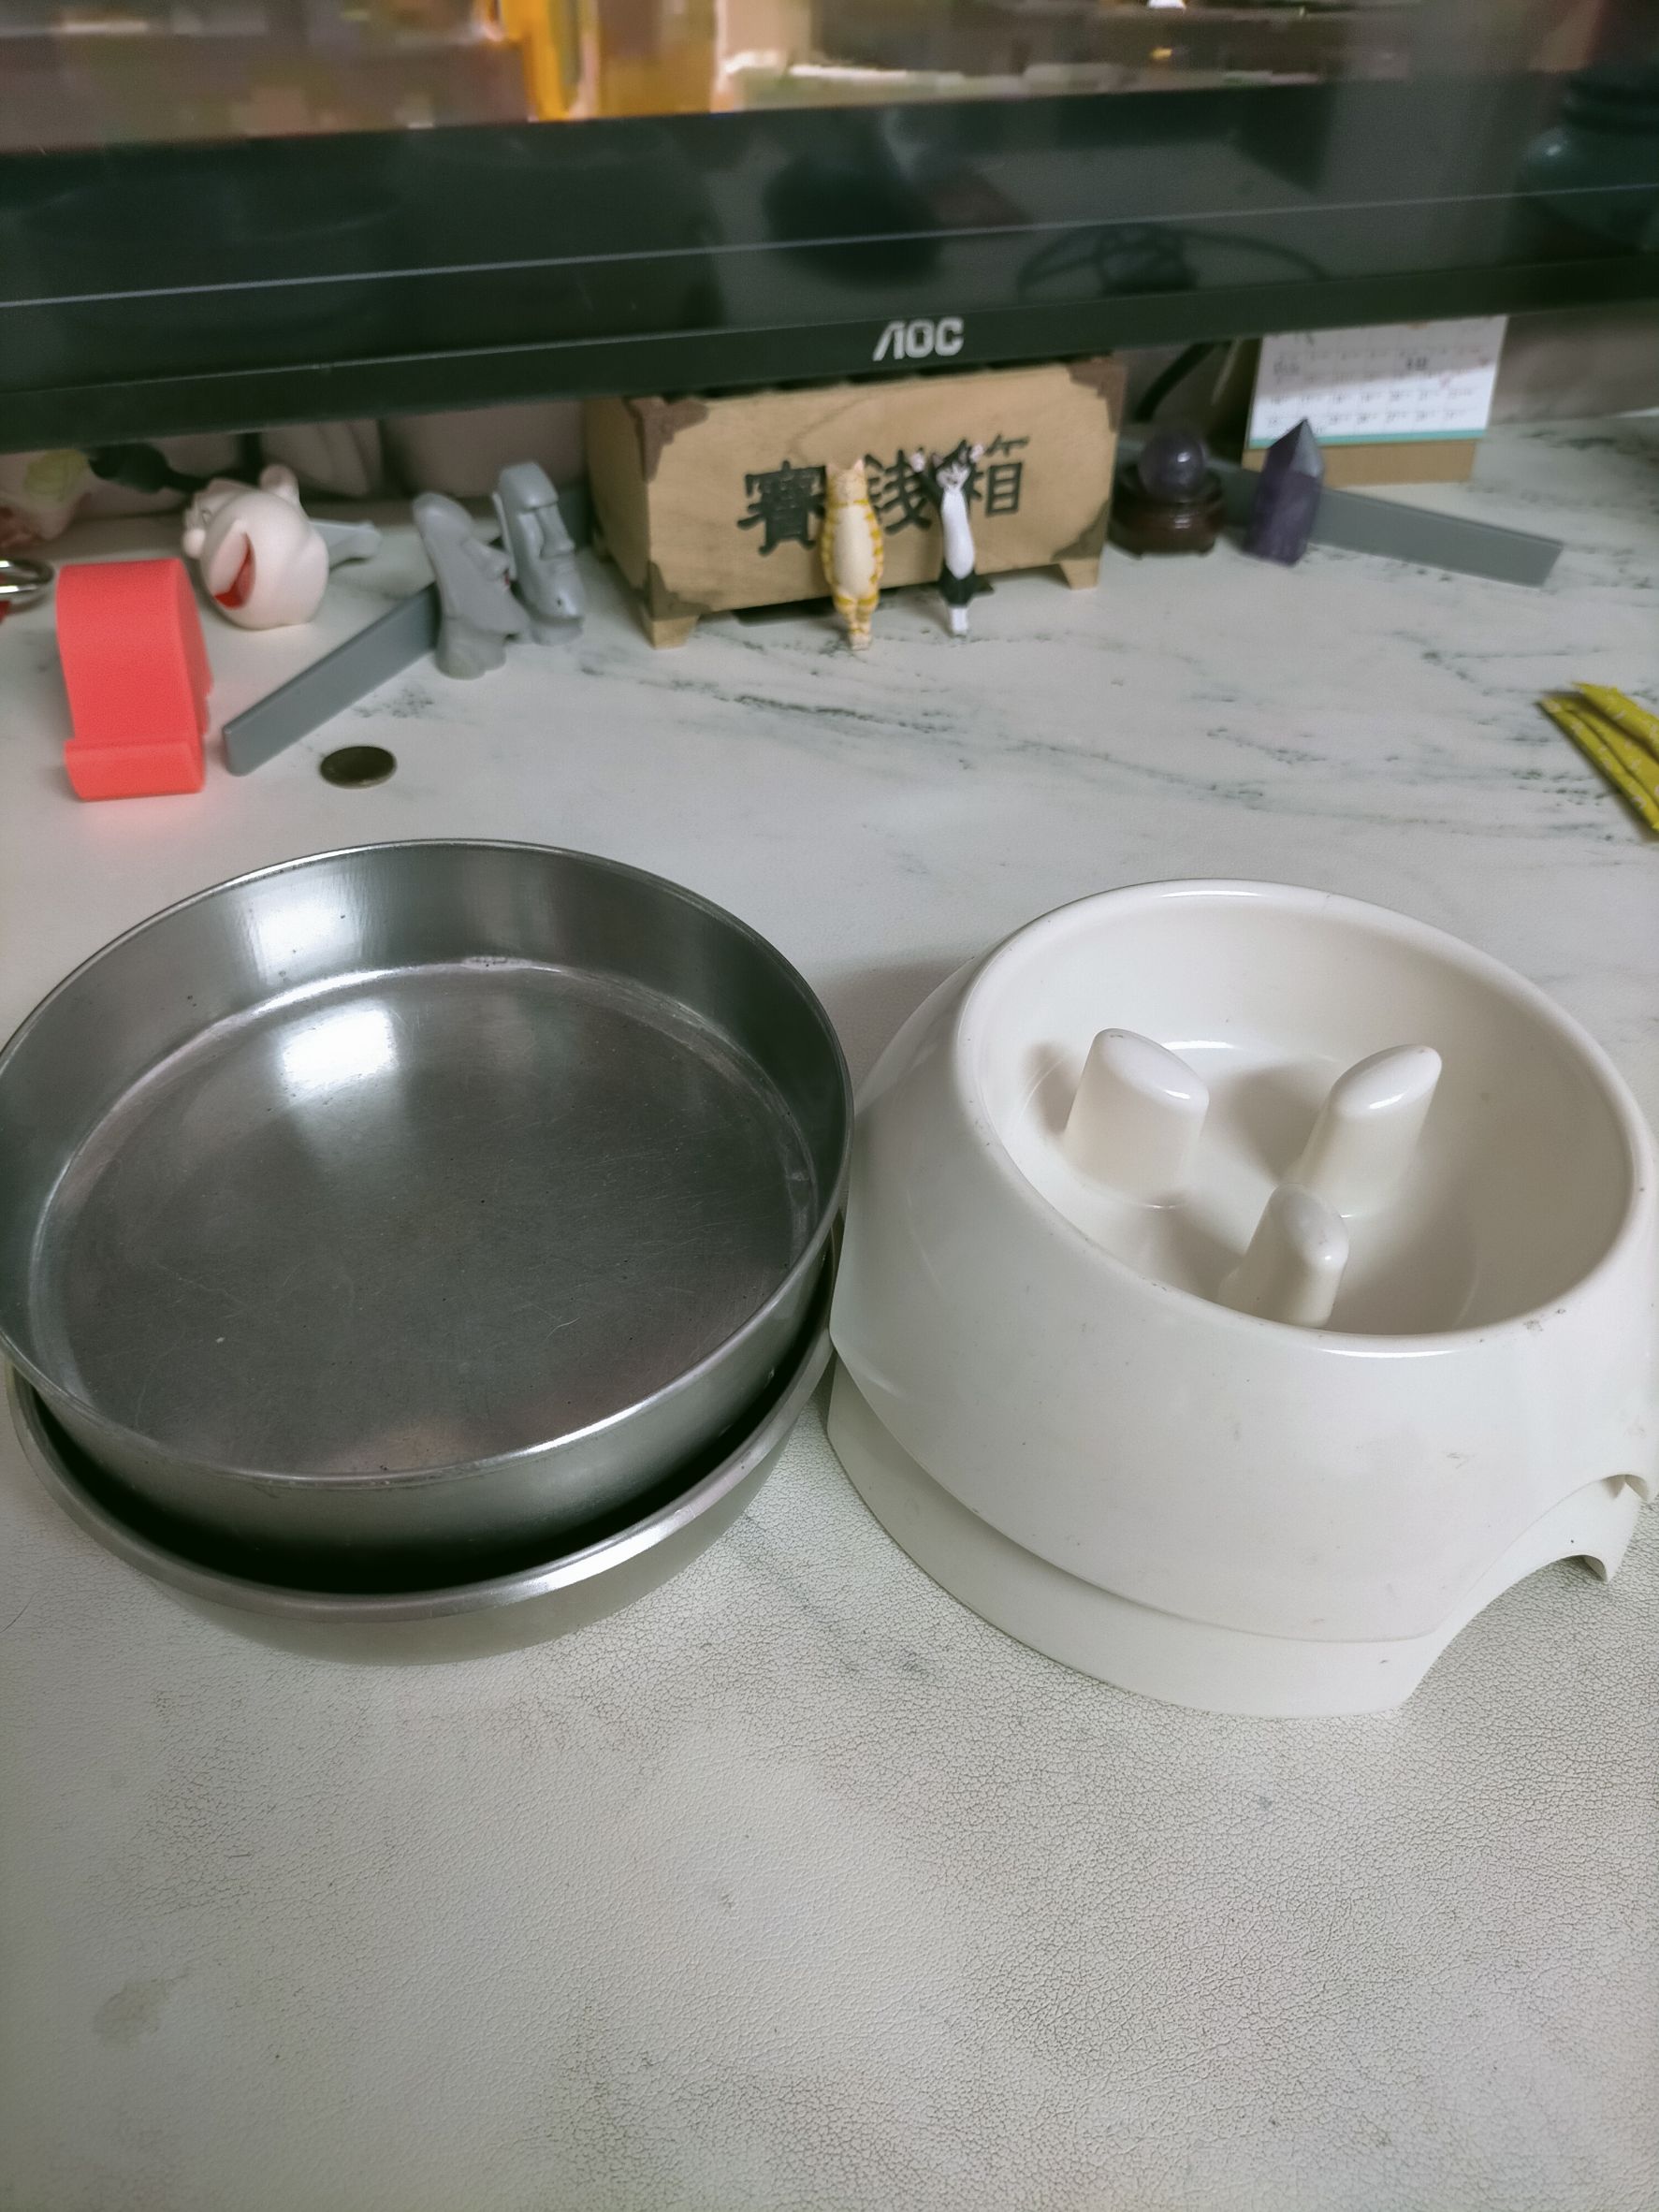 Fw: [贈送] 台中南屯區贈送寵物慢食碗+不鏽鋼碗